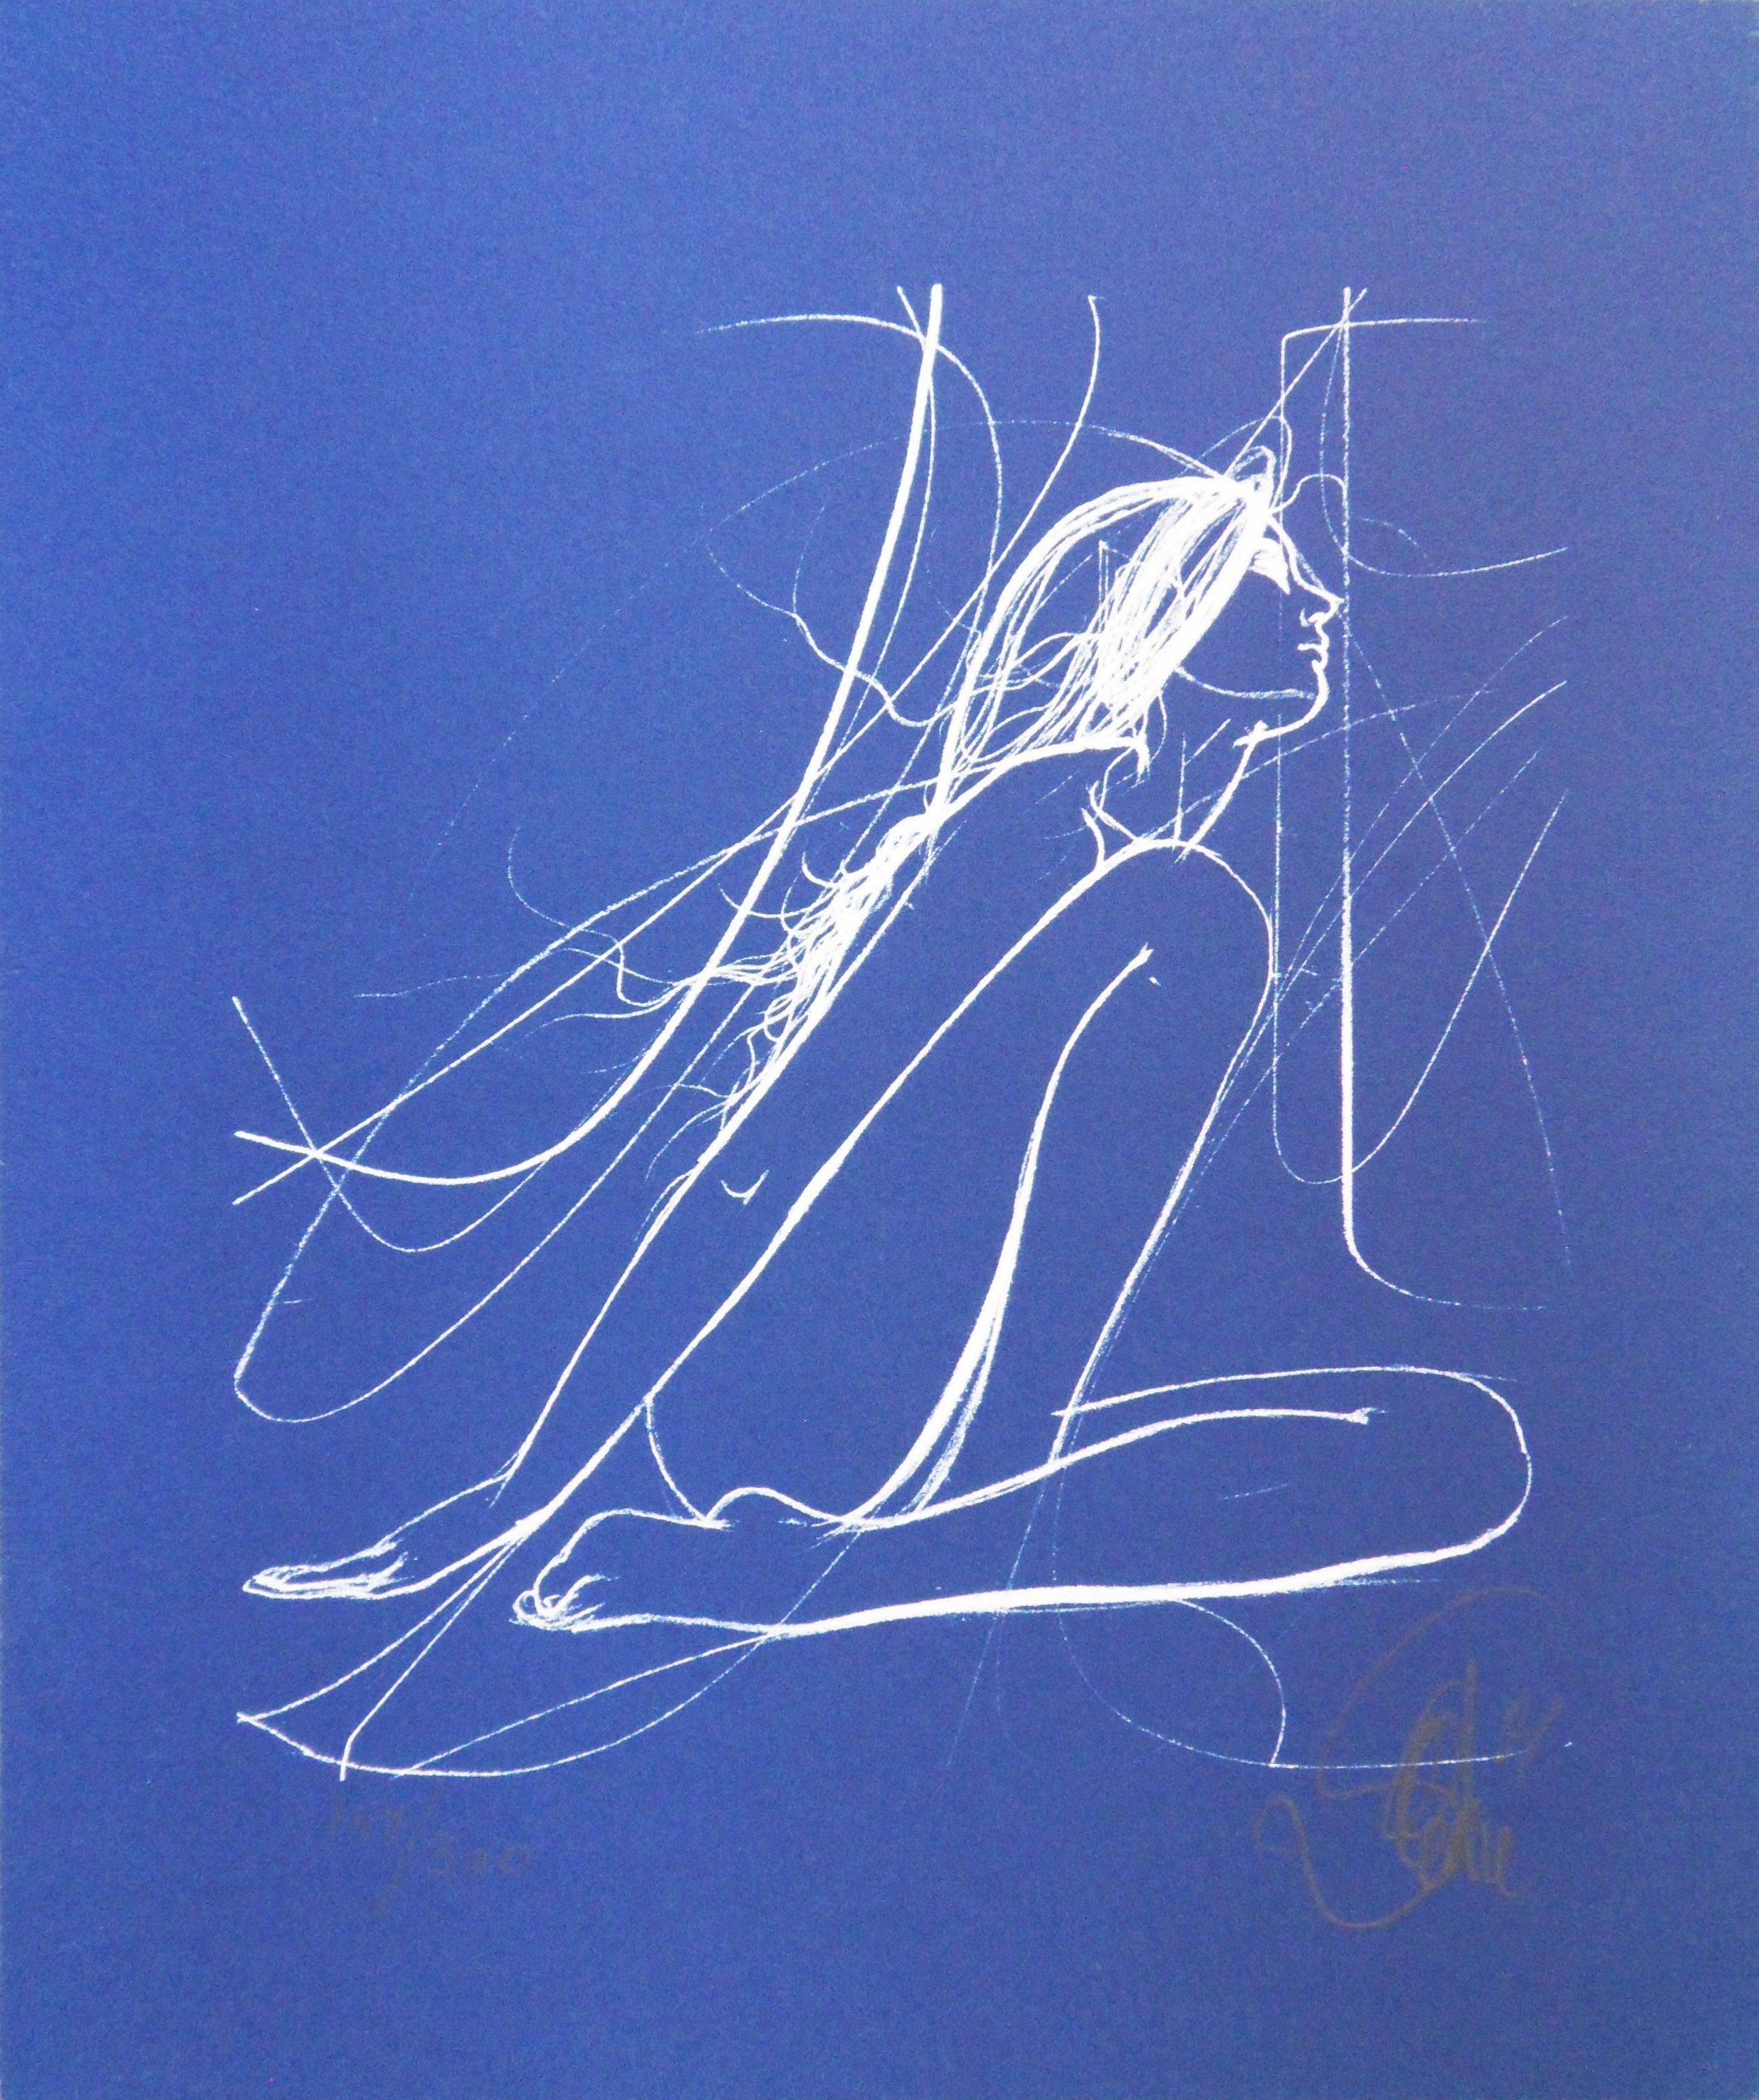 Jean-Baptiste Valadie Nude Print - The Dancer - Original handsigned lithograph - Ltd 300